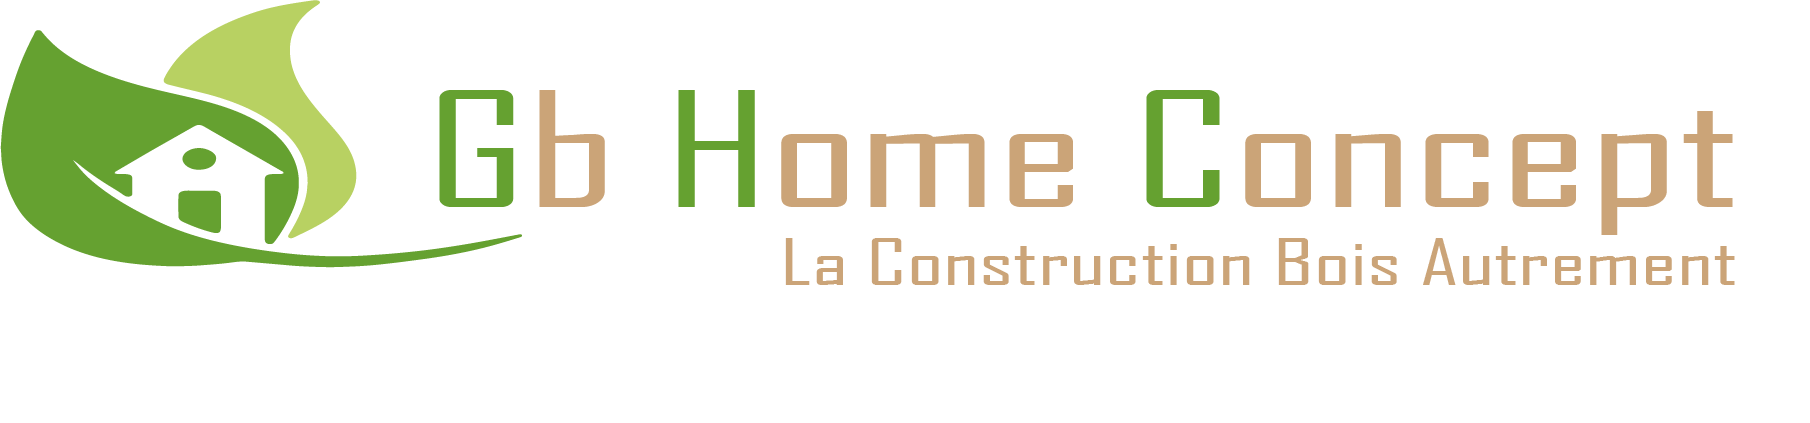 Boutique GB HOME CONCEPT - Côte-d'Or